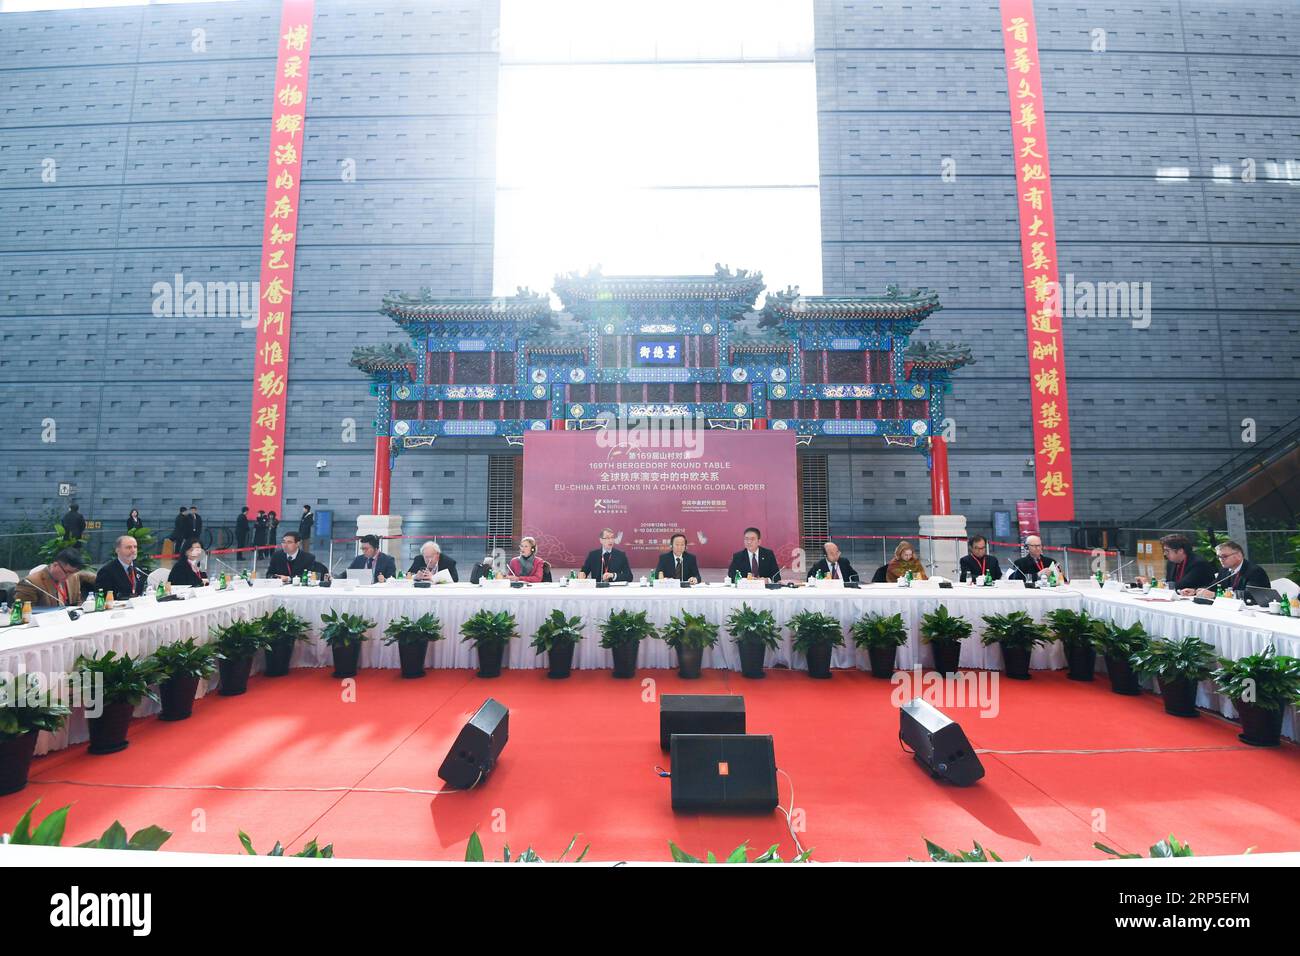 (181211) -- PÉKIN, 11 décembre 2018 -- une photo prise le 9 décembre 2018 montre une scène de la 169e Table ronde Bergedorf à Pékin, capitale de la Chine. )(mcg) TABLE RONDE CHINE-PÉKIN-BERGEDORF (CN) ChenxYehua PUBLICATIONxNOTxINxCHN Banque D'Images